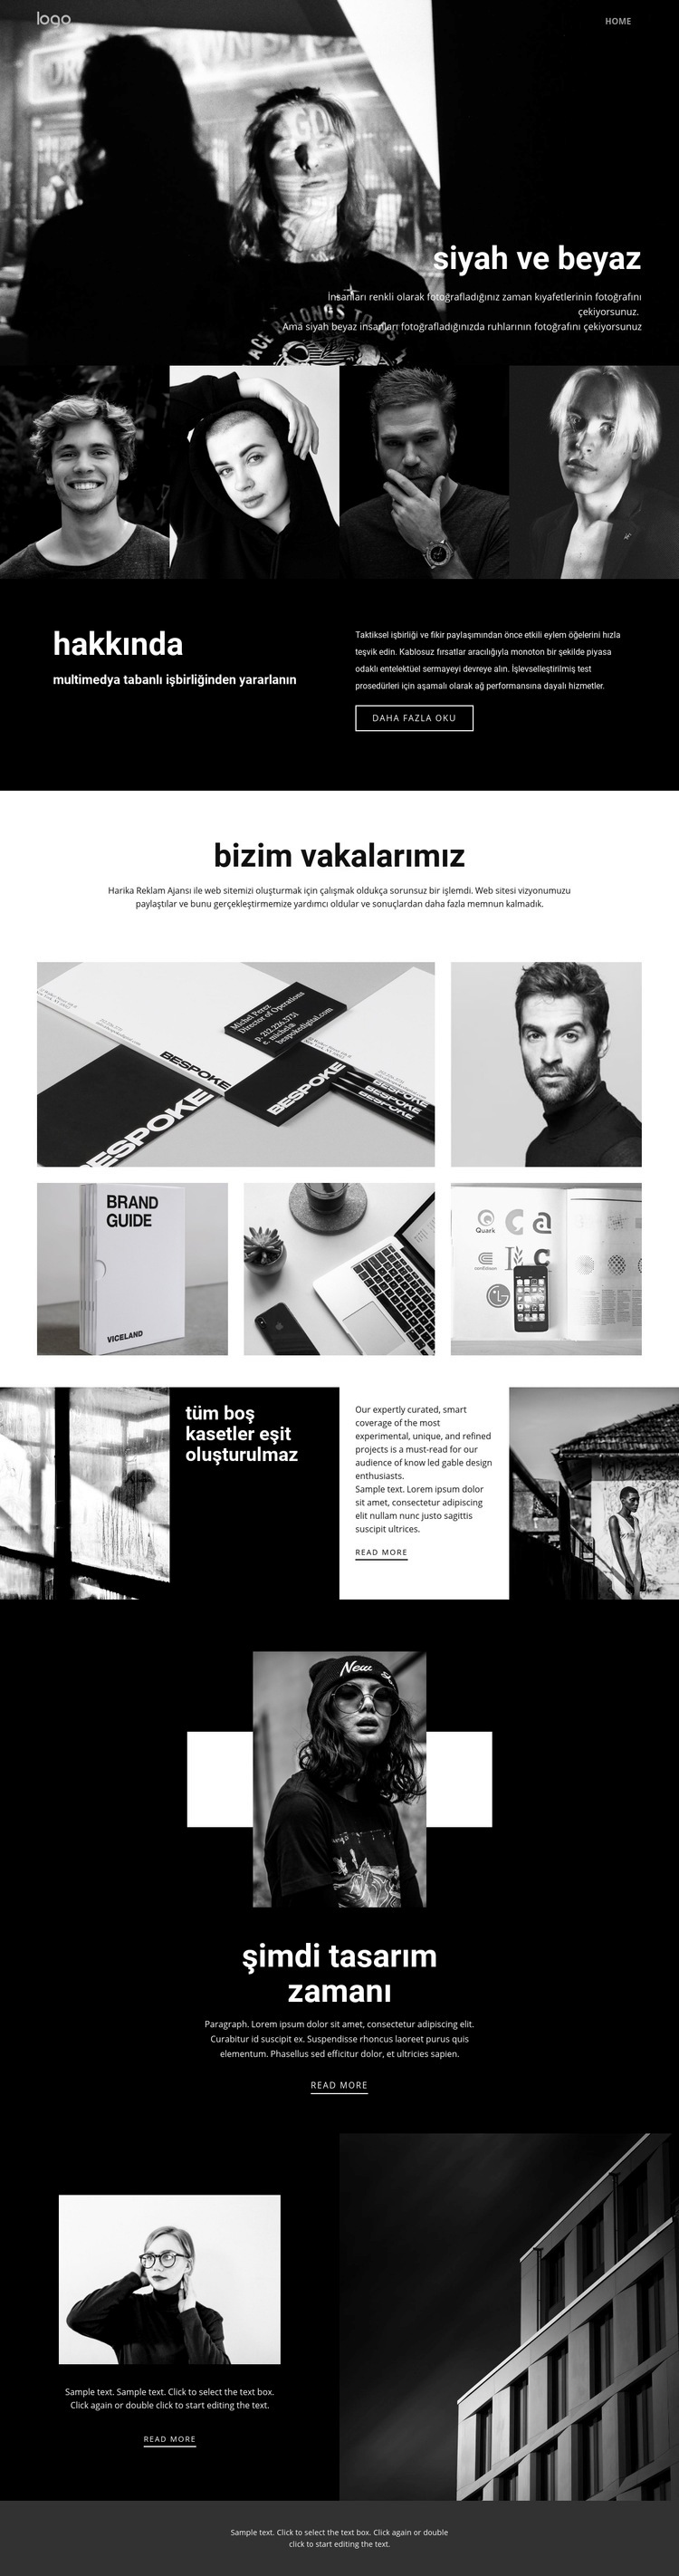 Sanatın siyah ve beyaz renkleri Web sitesi tasarımı